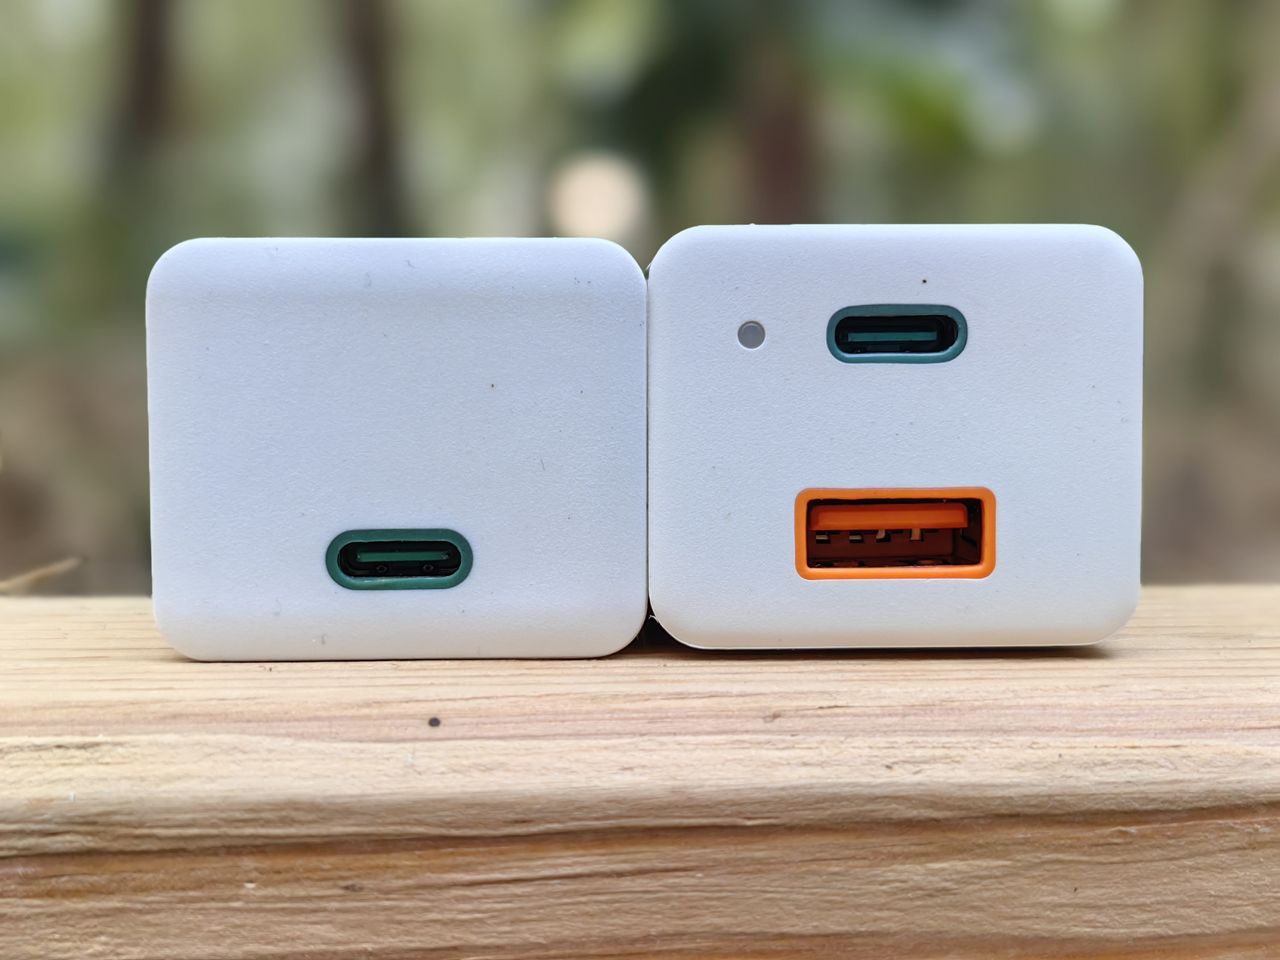 Obie ładowarki są równie małe w przekroju, ale Hama Mini Charger With USB-C/USB-A ma dwa gniazda i diodę. 